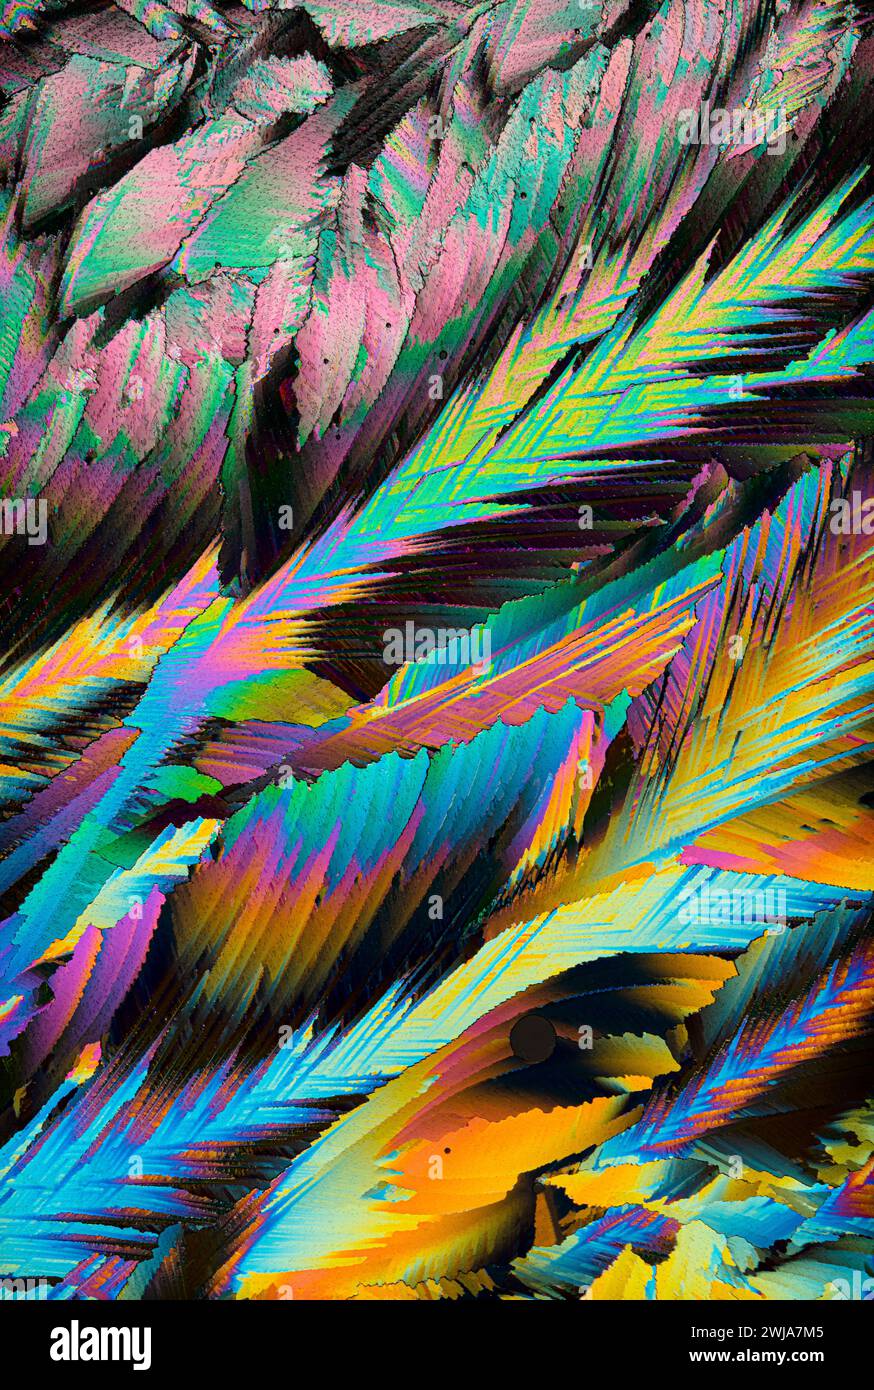 Eine farbenfrohe Nahaufnahme der Kristallvergrößerung zeigt ein psychedelisches Muster mit lebhaften Farbtönen und komplizierten Details Stockfoto